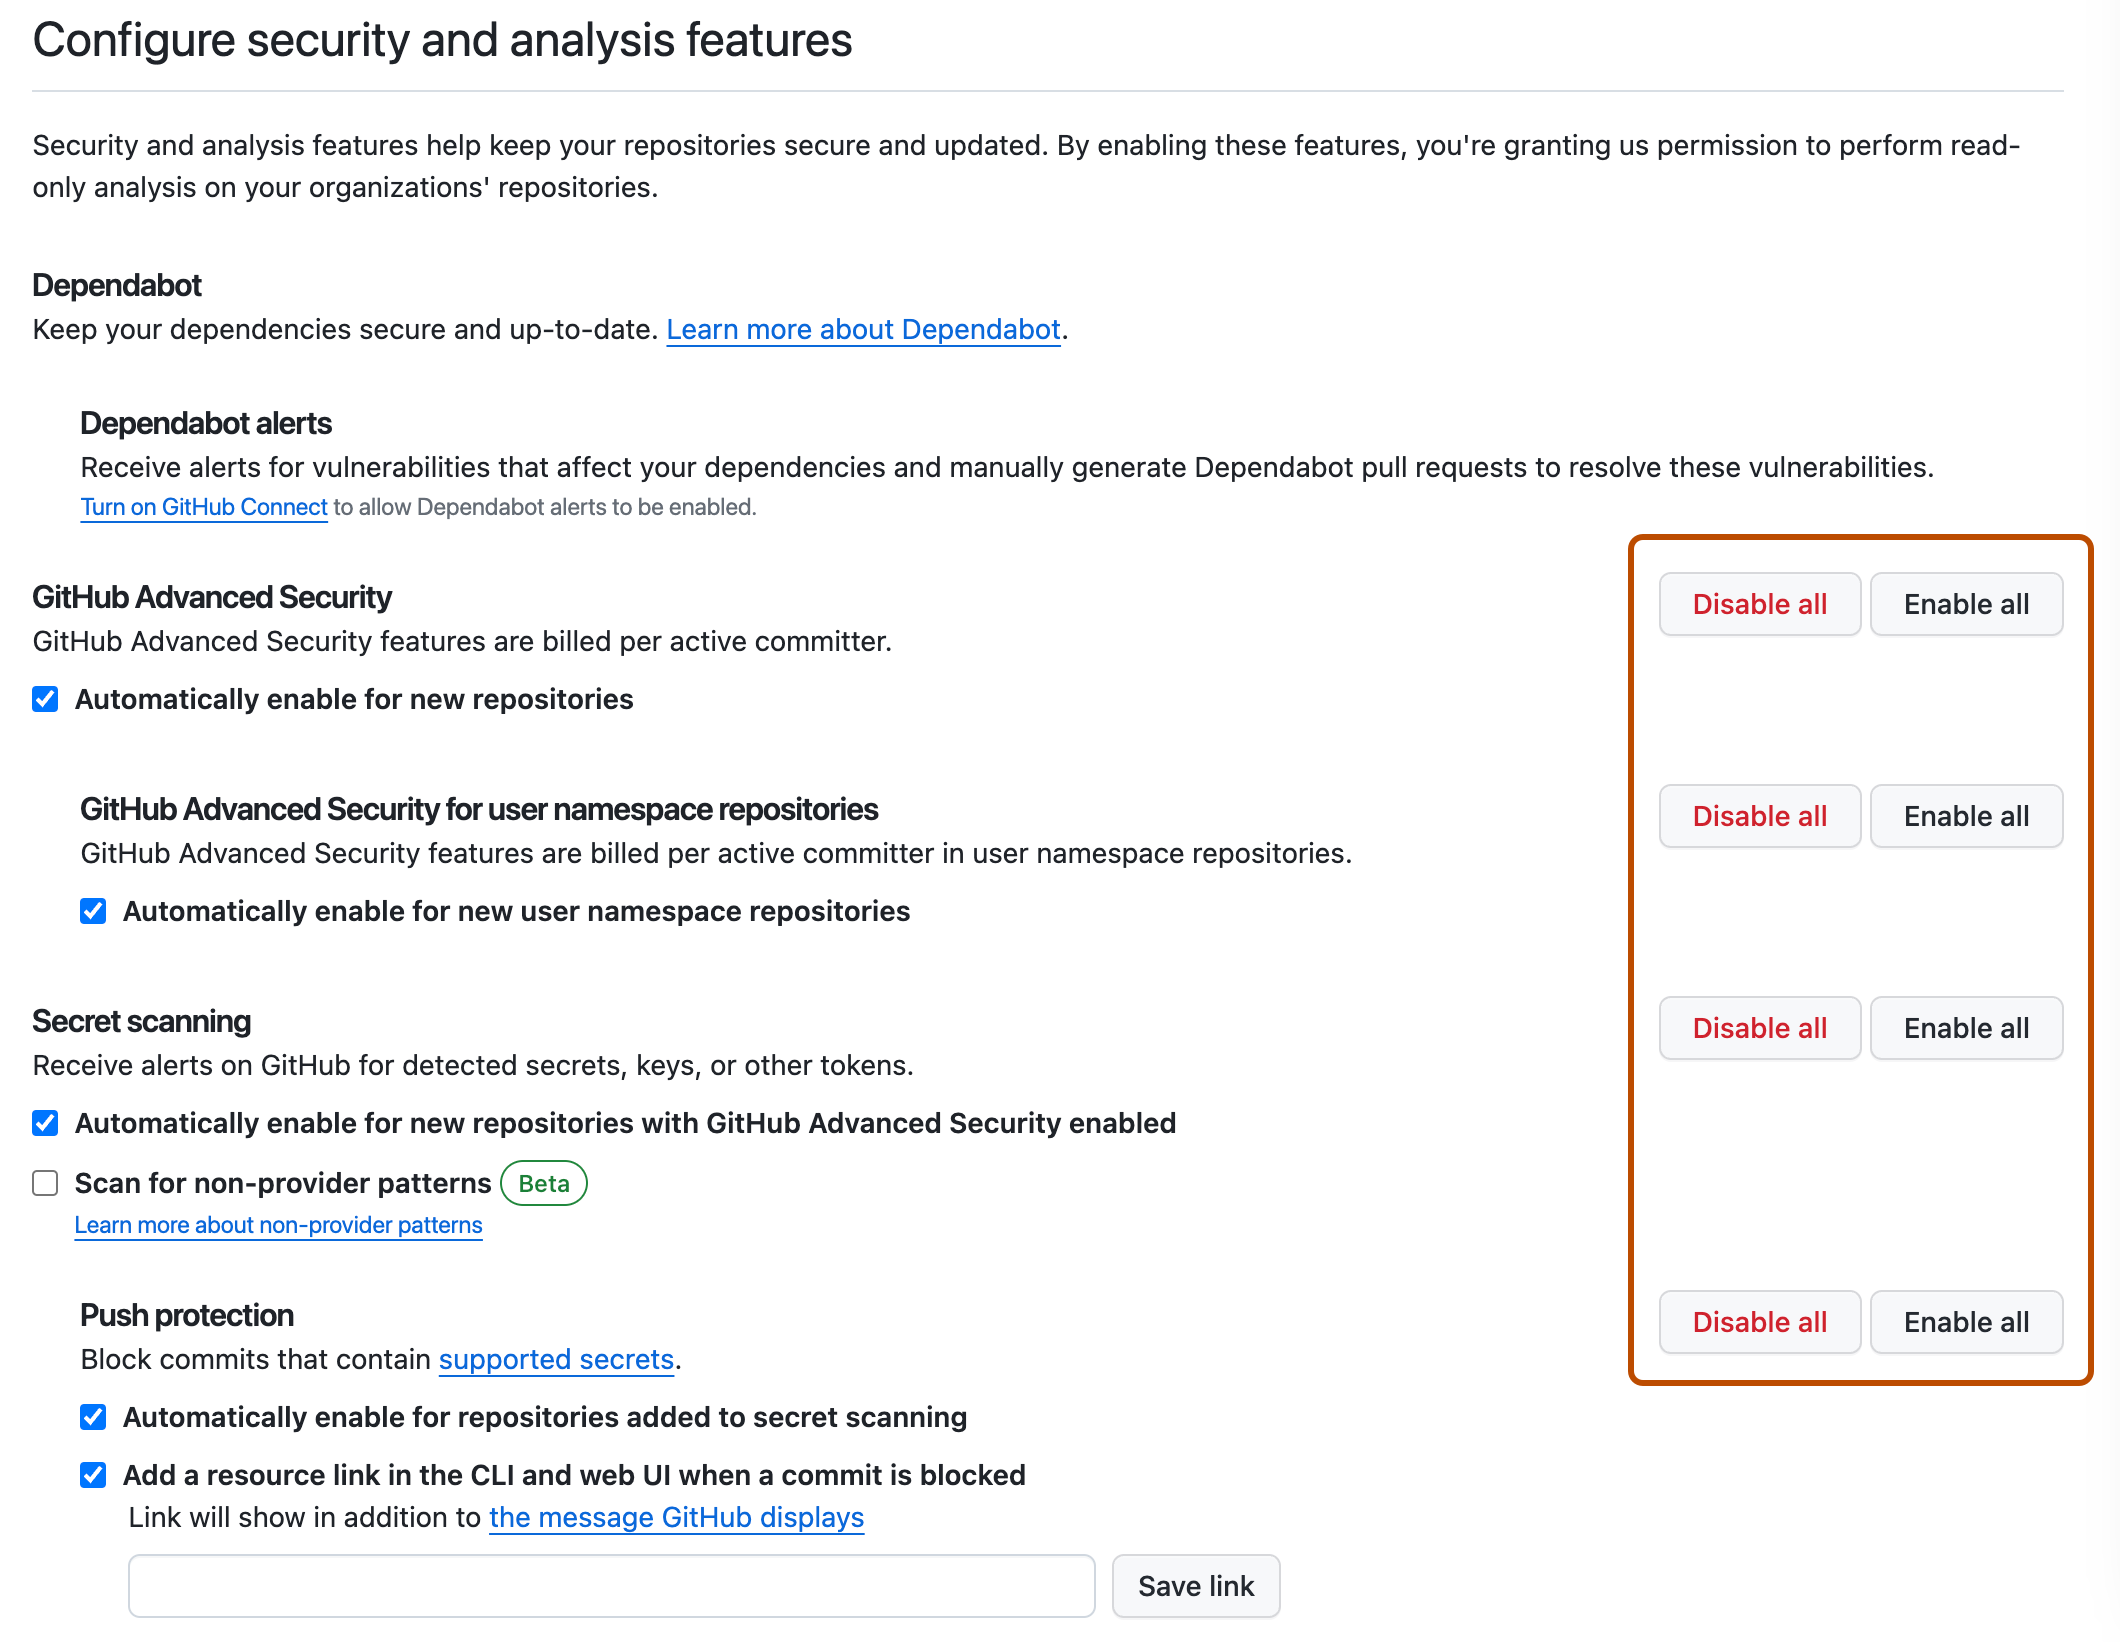 Captura de pantalla de la sección "Configurar características de seguridad y análisis" de la configuración empresarial. A la derecha de cada configuración se muestran los botones "Habilitar todo" y "Deshabilitar todo", que se resaltan en naranja oscuro.